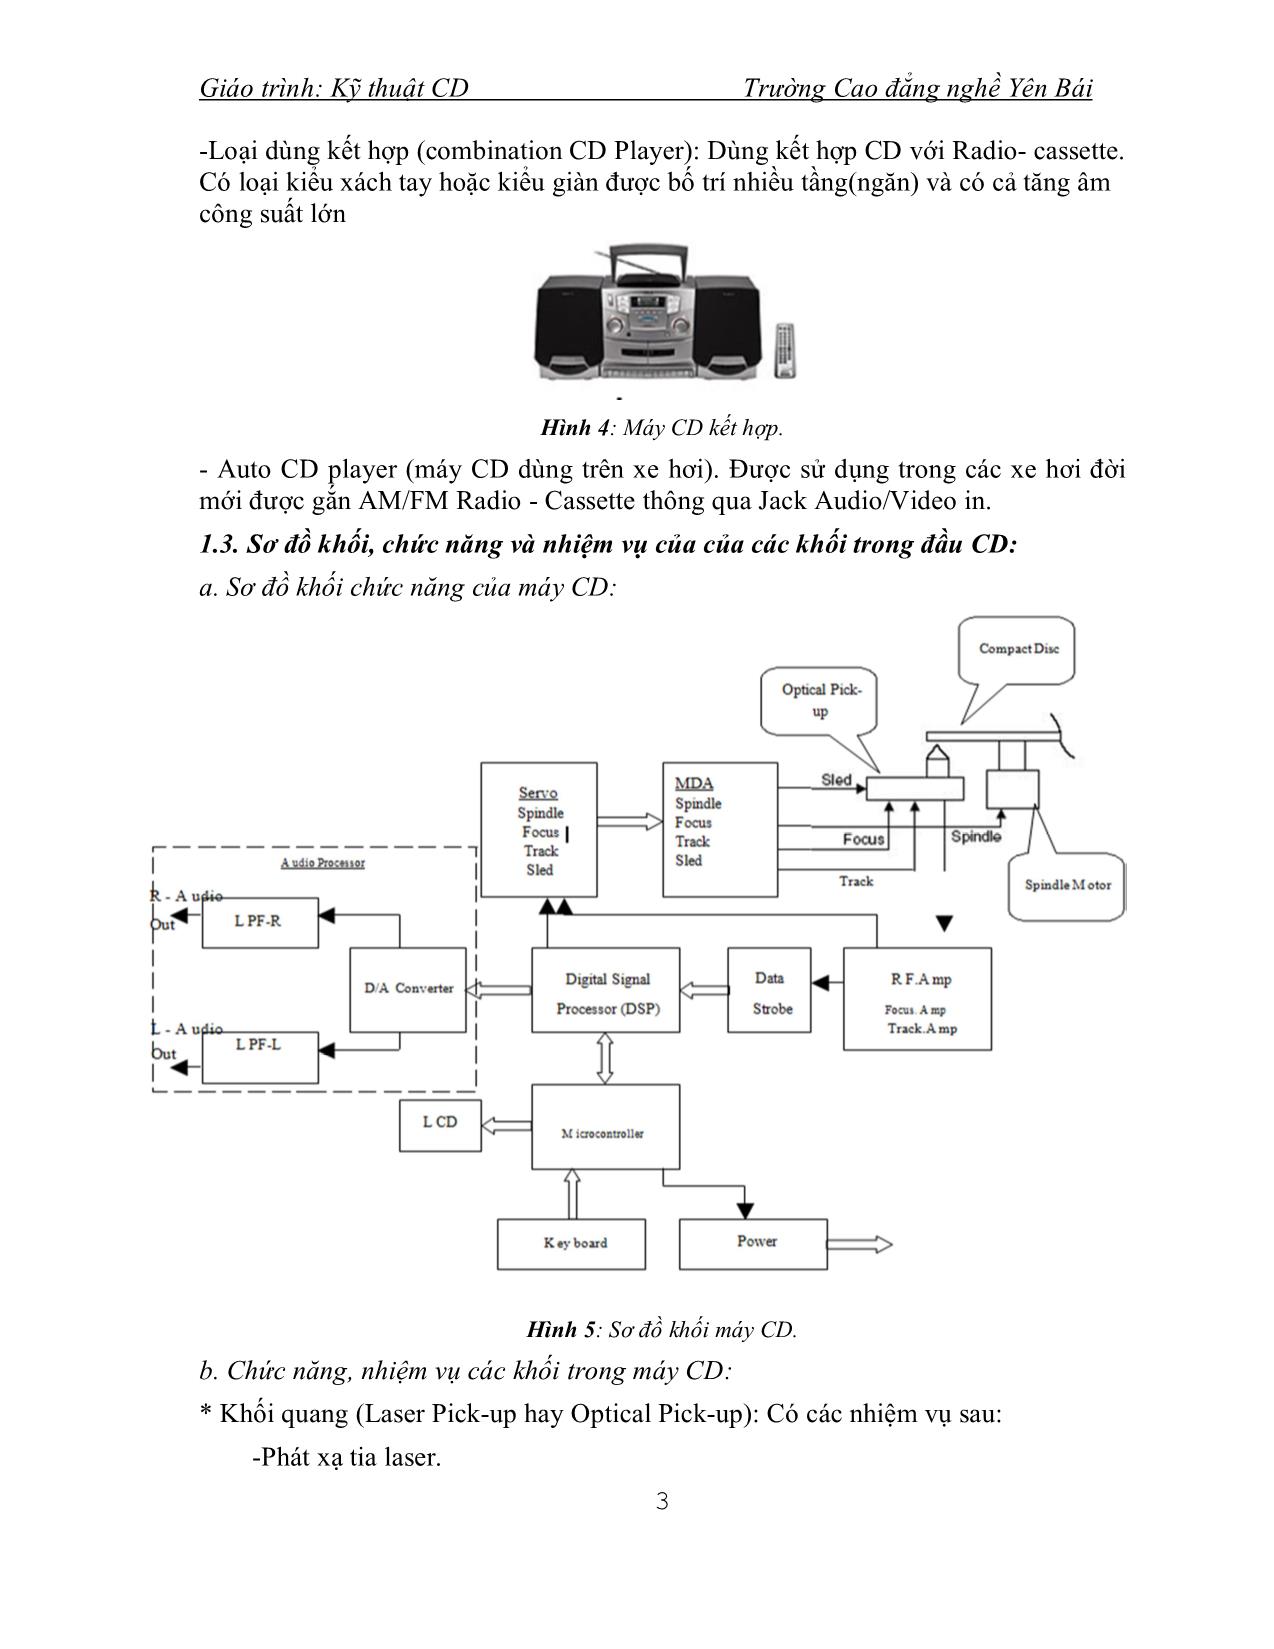 Giáo trình Kỹ thuật CD (Phần 1) trang 4